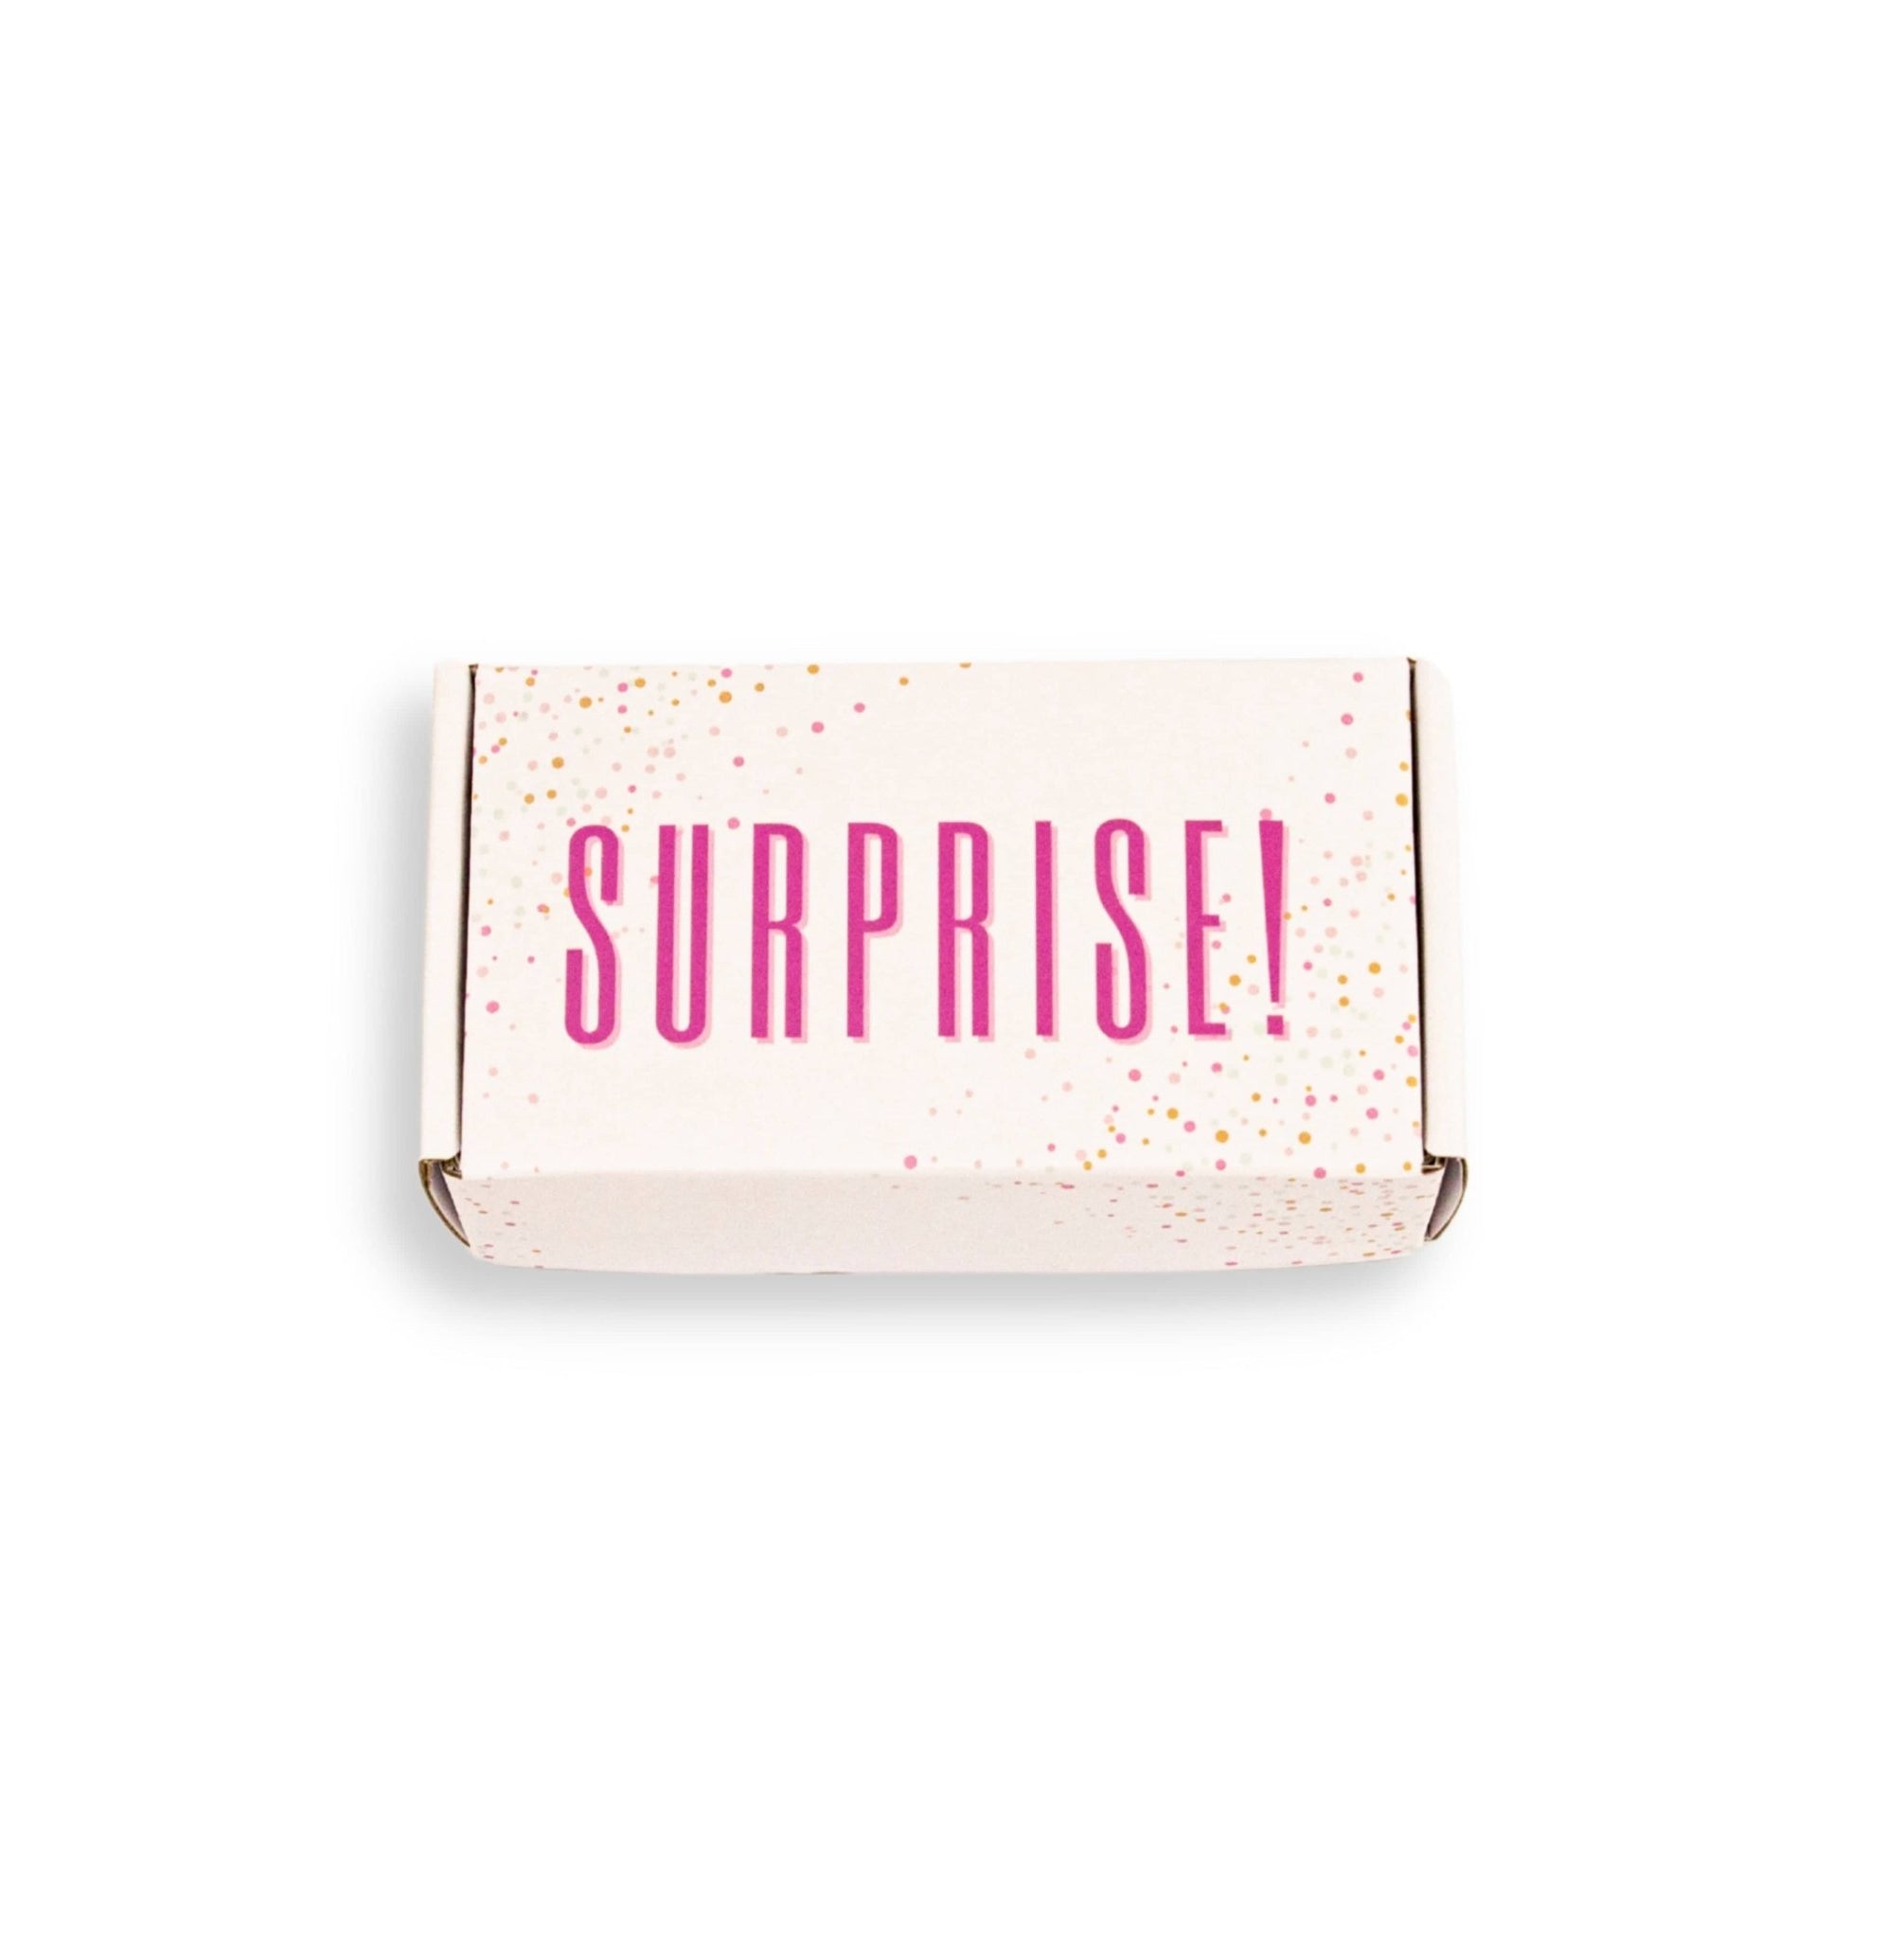 Surprise Box - Eat a Dick by DickAtYourDoor - UntamedEgo LLC.